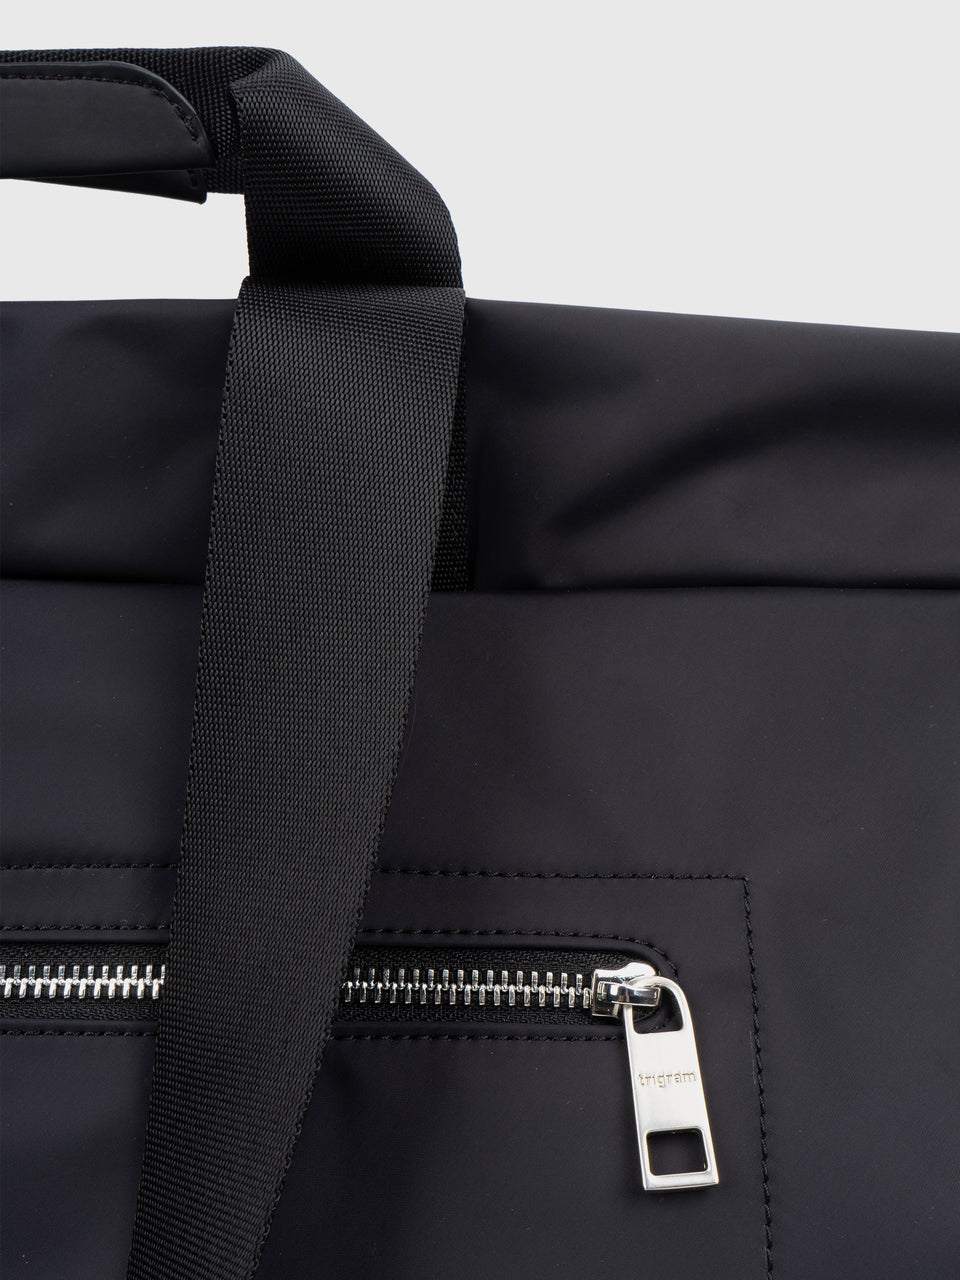 Weekender Bag - Charcoal Black